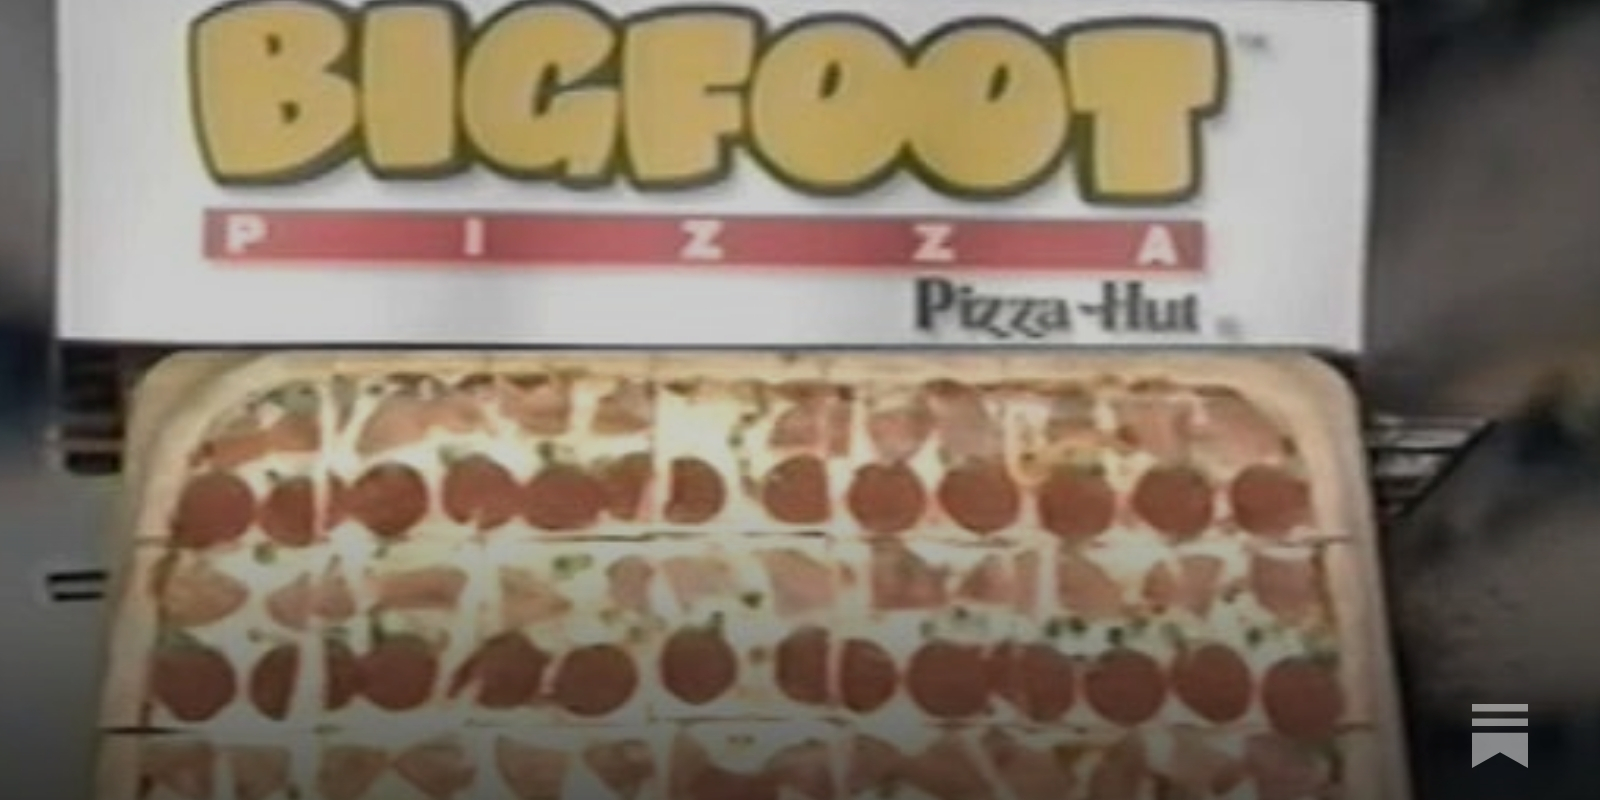 Pizza Hut Bigfoot Pizza Carryout Bag 1993